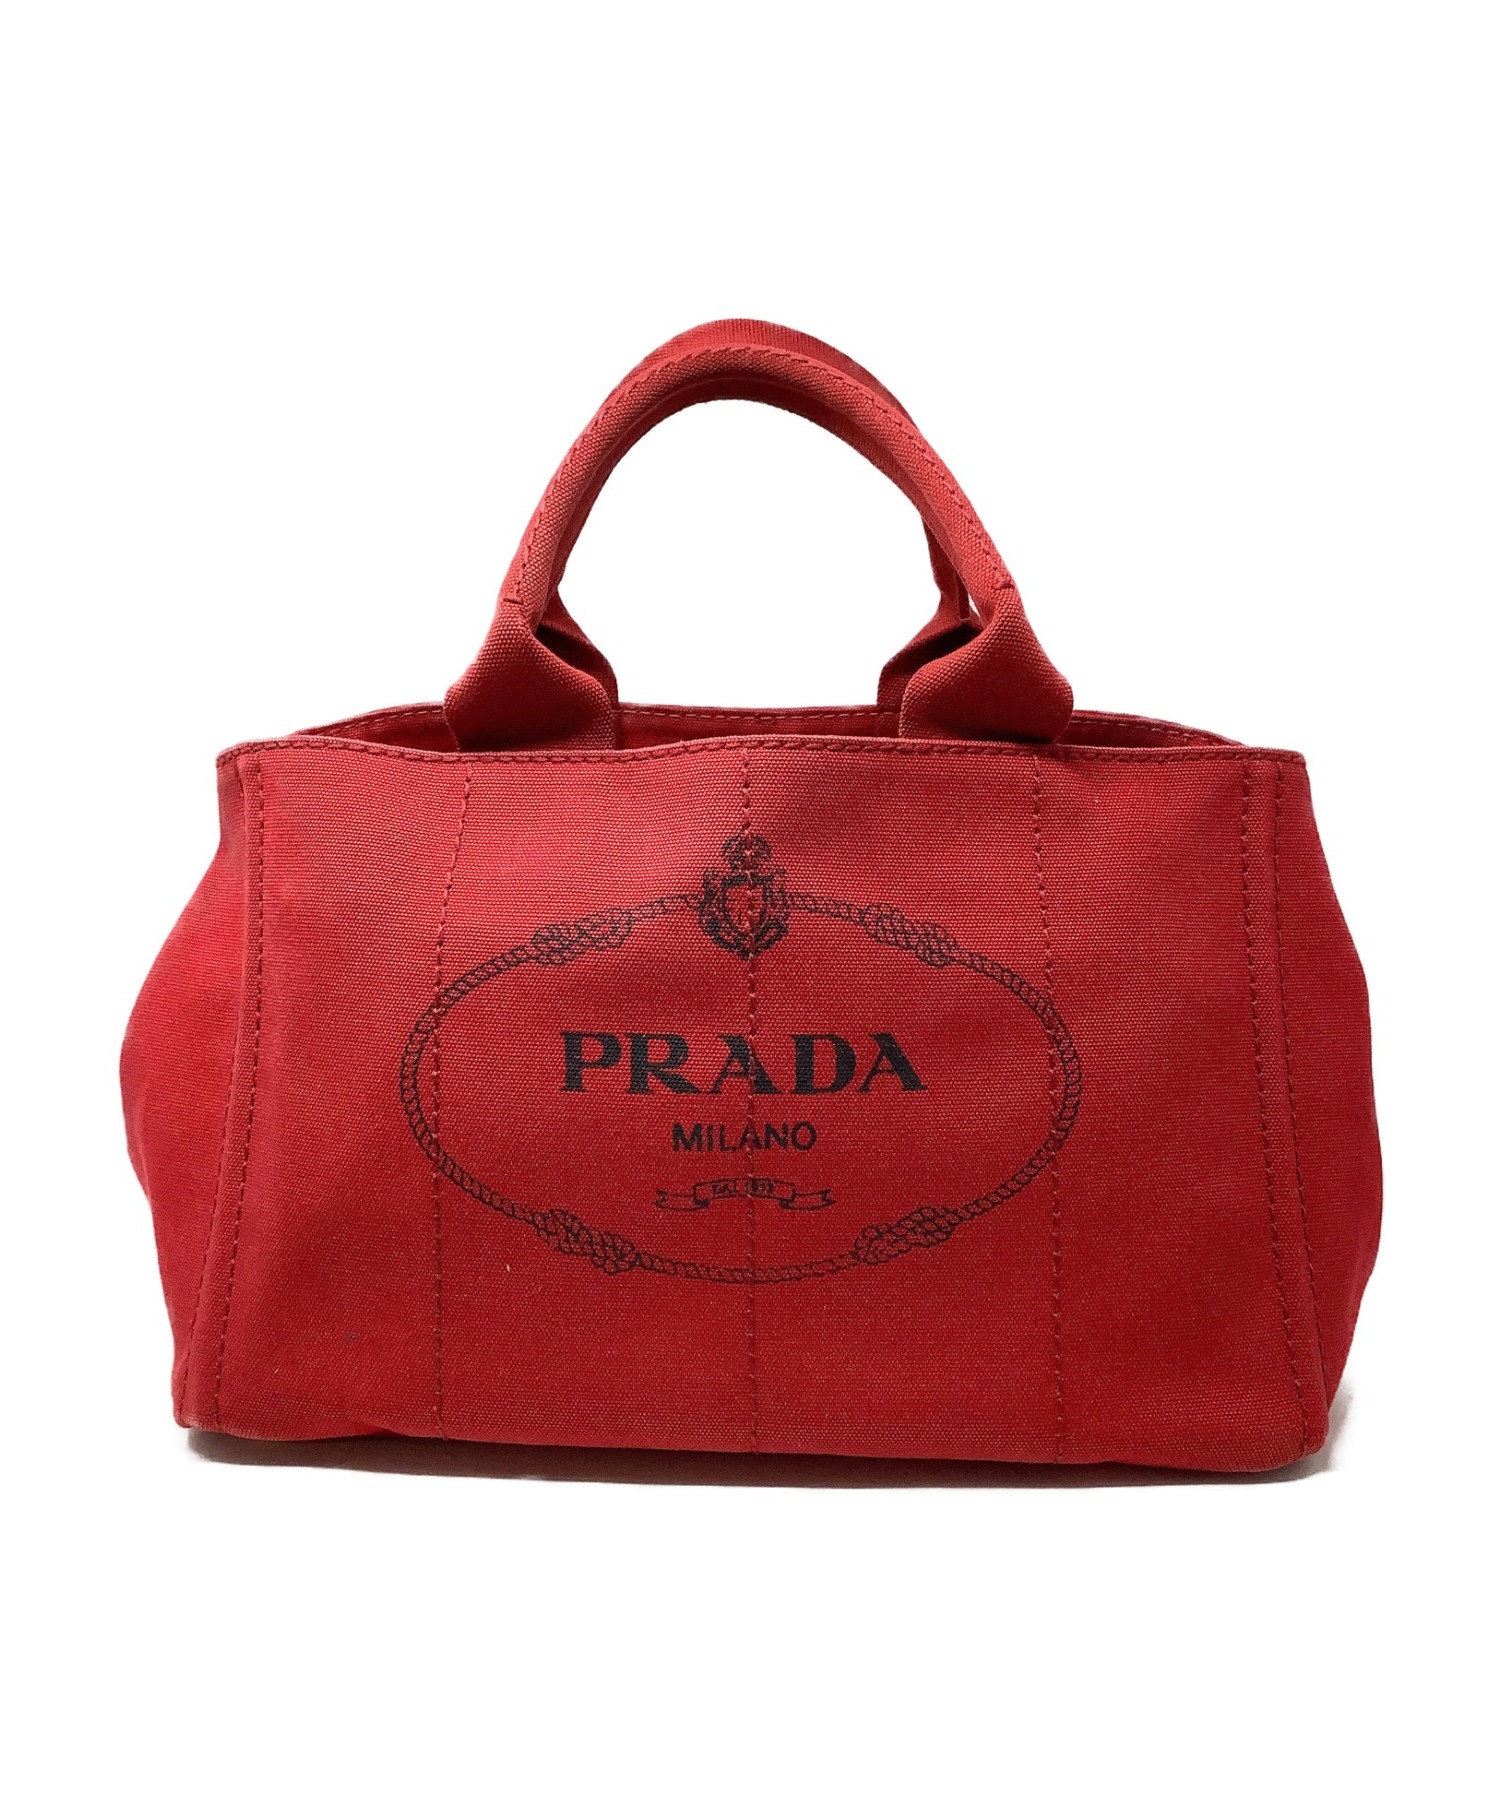 ◇良品◇ プラダ PRADA ハンドバッグ 鞄 カナパ ロゴ デニム